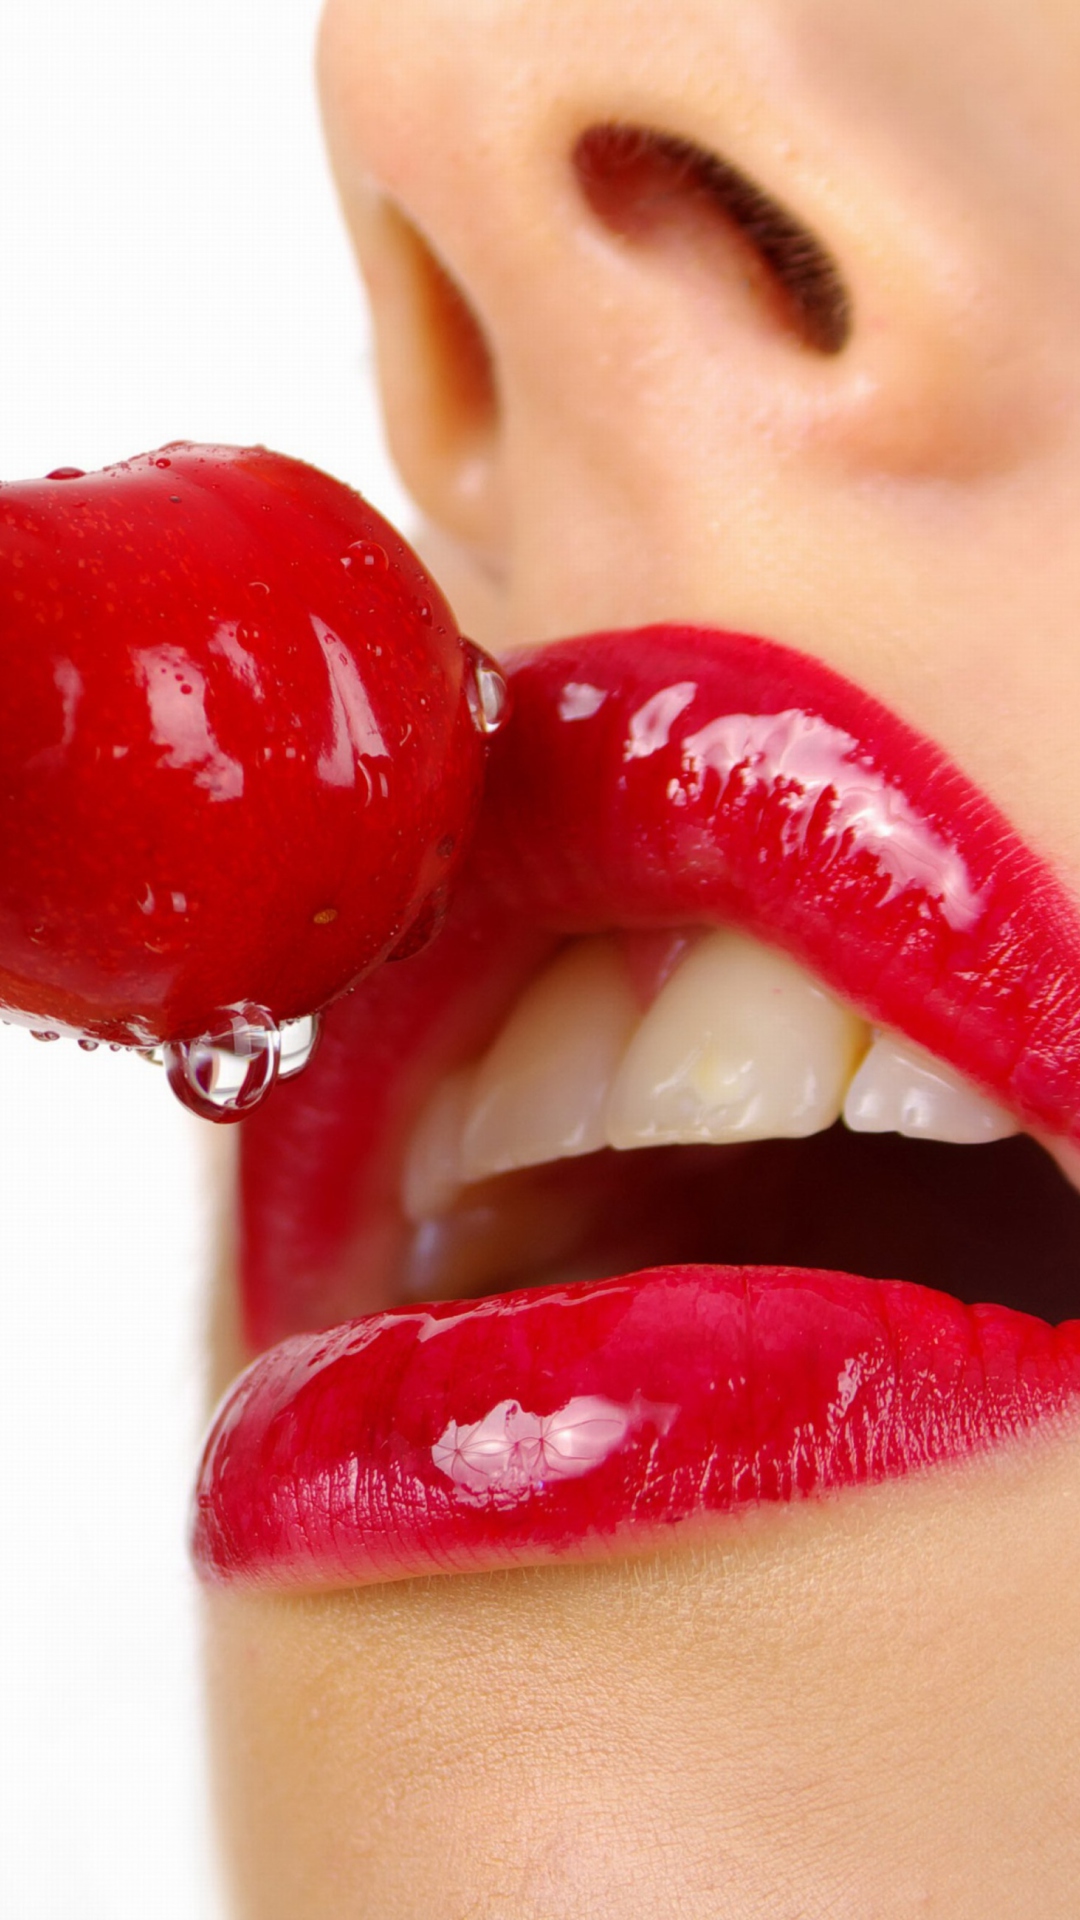 Обои Cherry and Red Lips 1080x1920